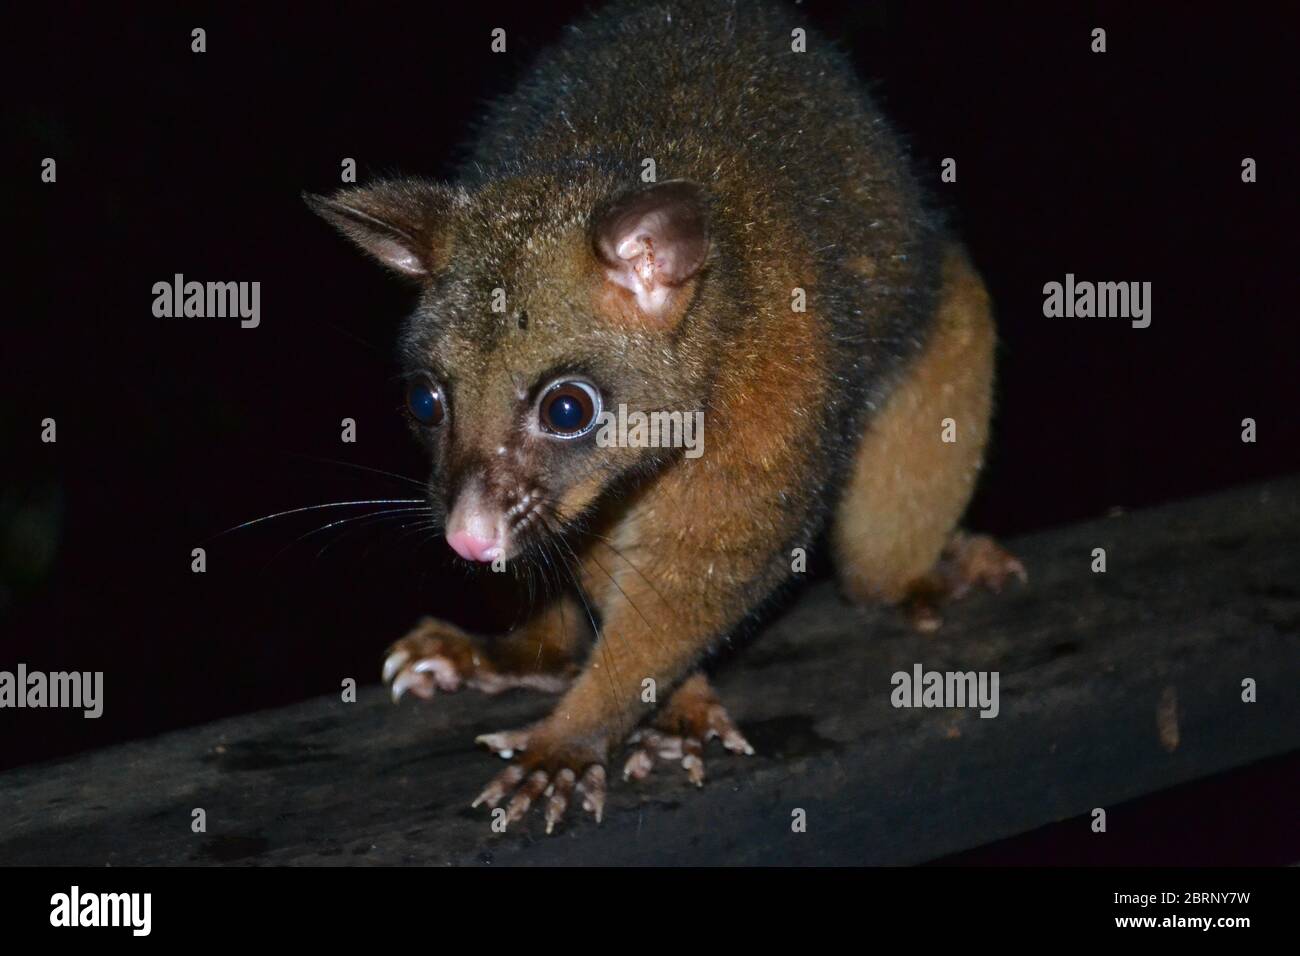 Large wild brushtail possum captured at night in Australia Stock Photo